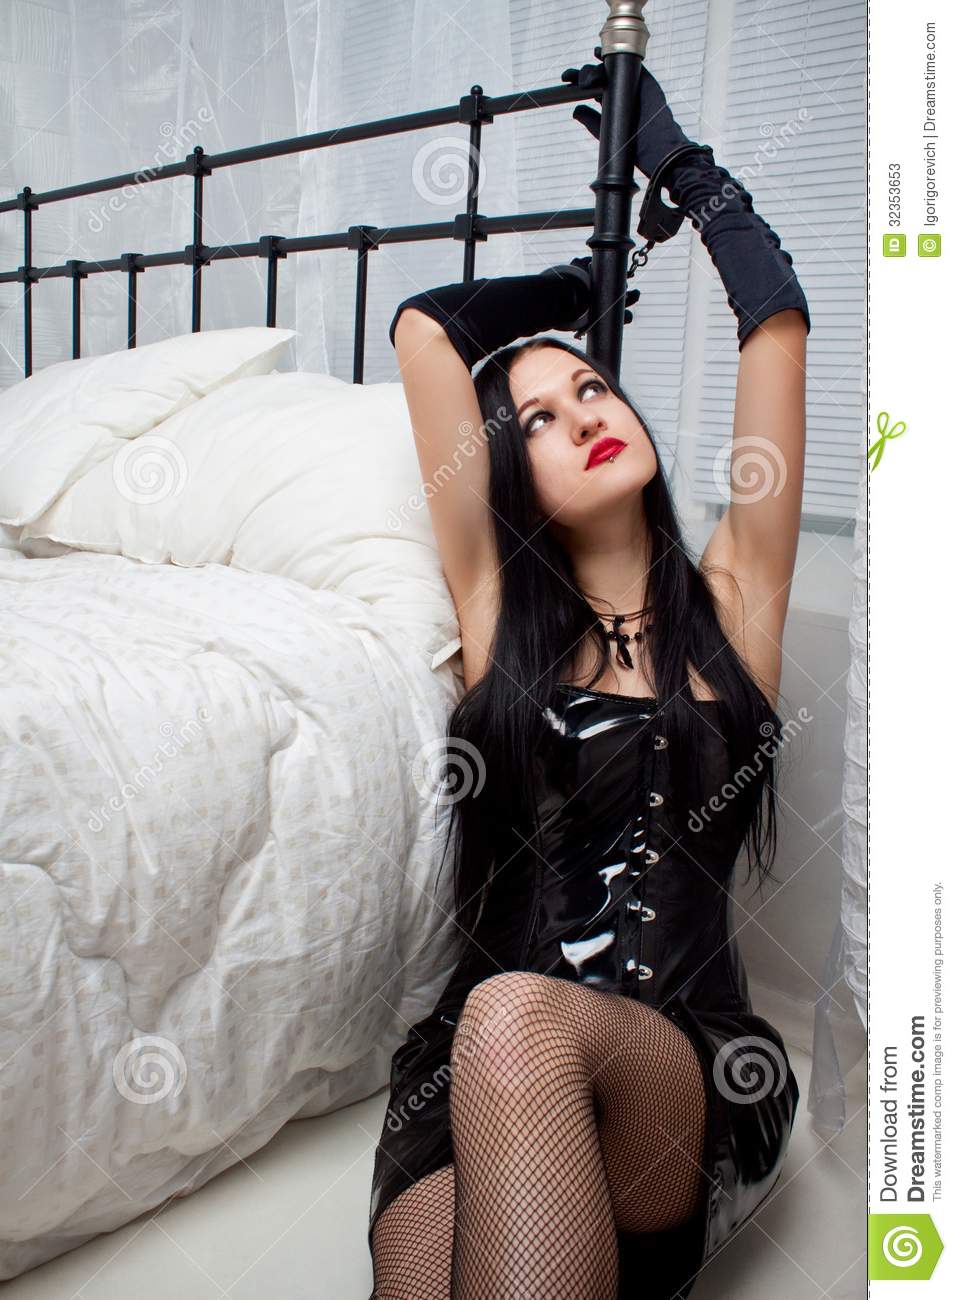 best of Woman Bedroom bondage in